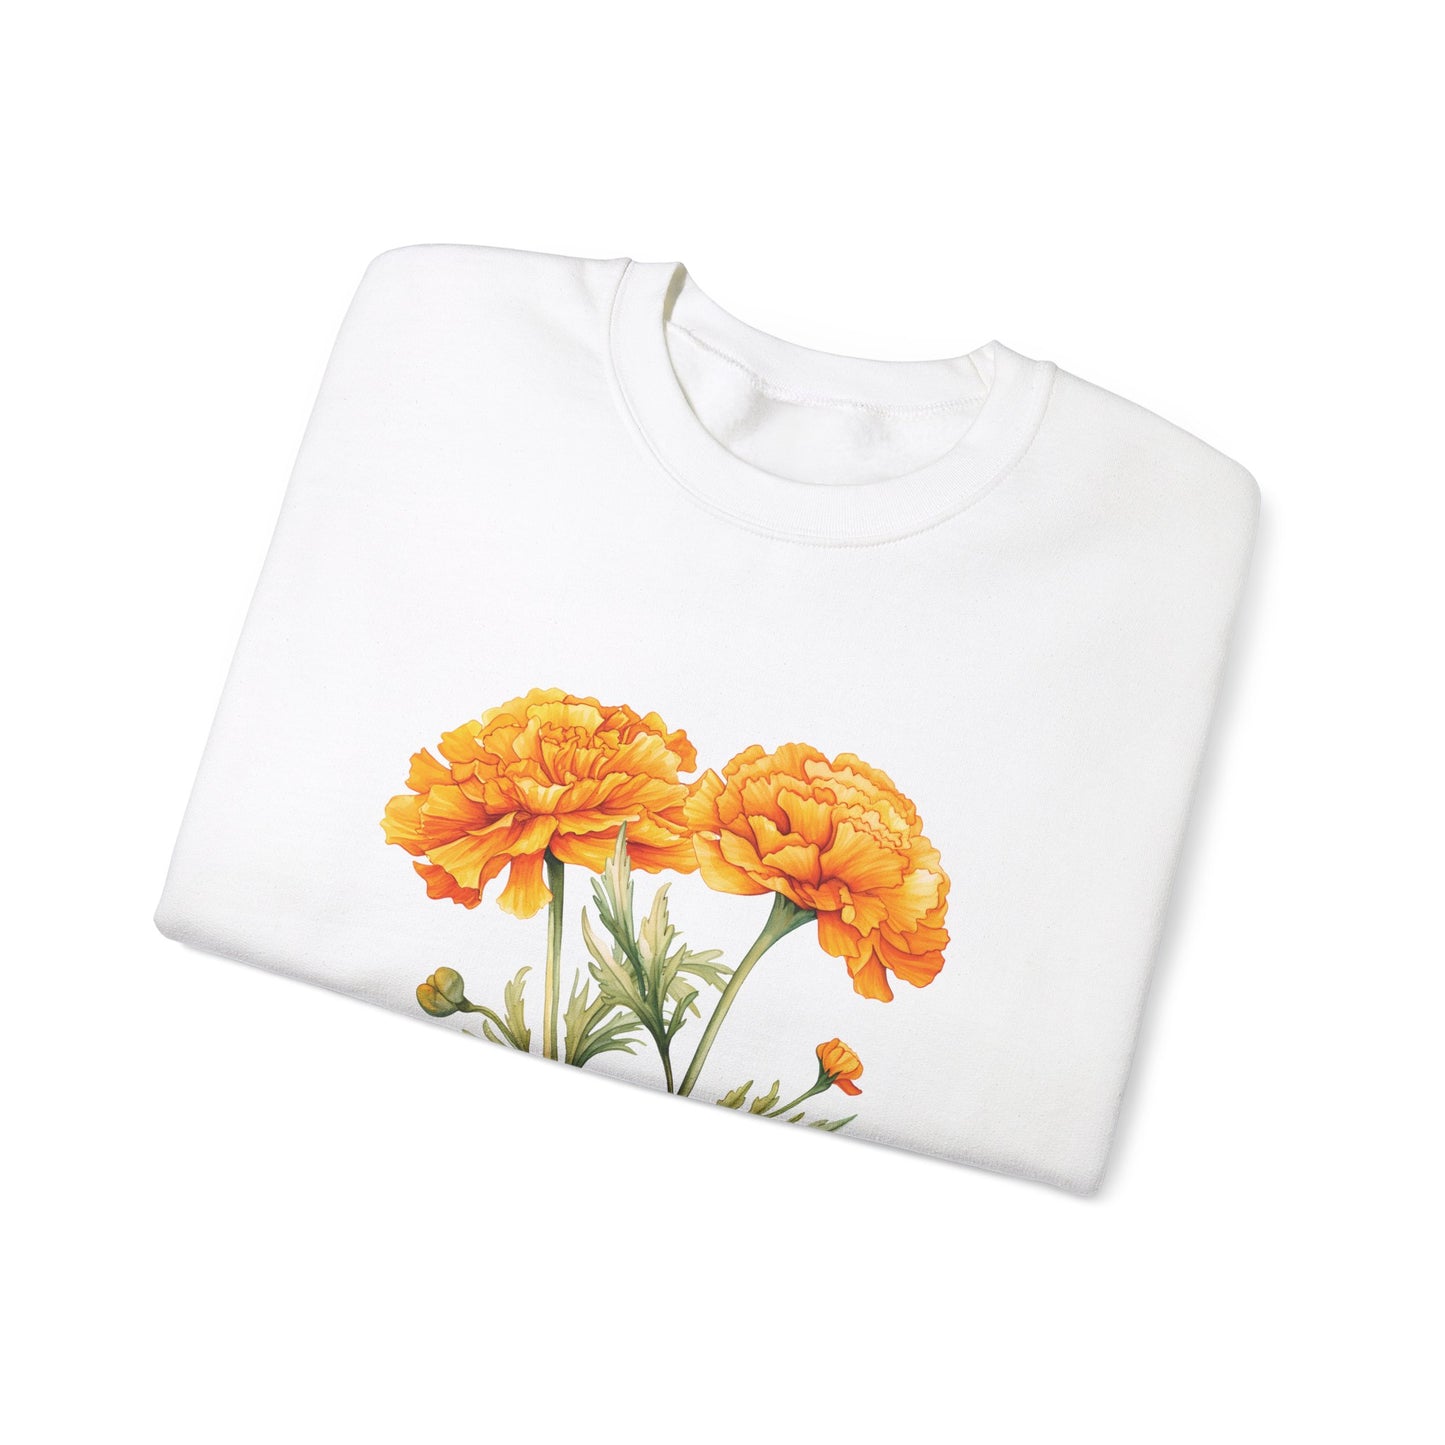 October Birth Flower (Marigold) - Unisex Heavy Blend™ Crewneck Sweatshirt